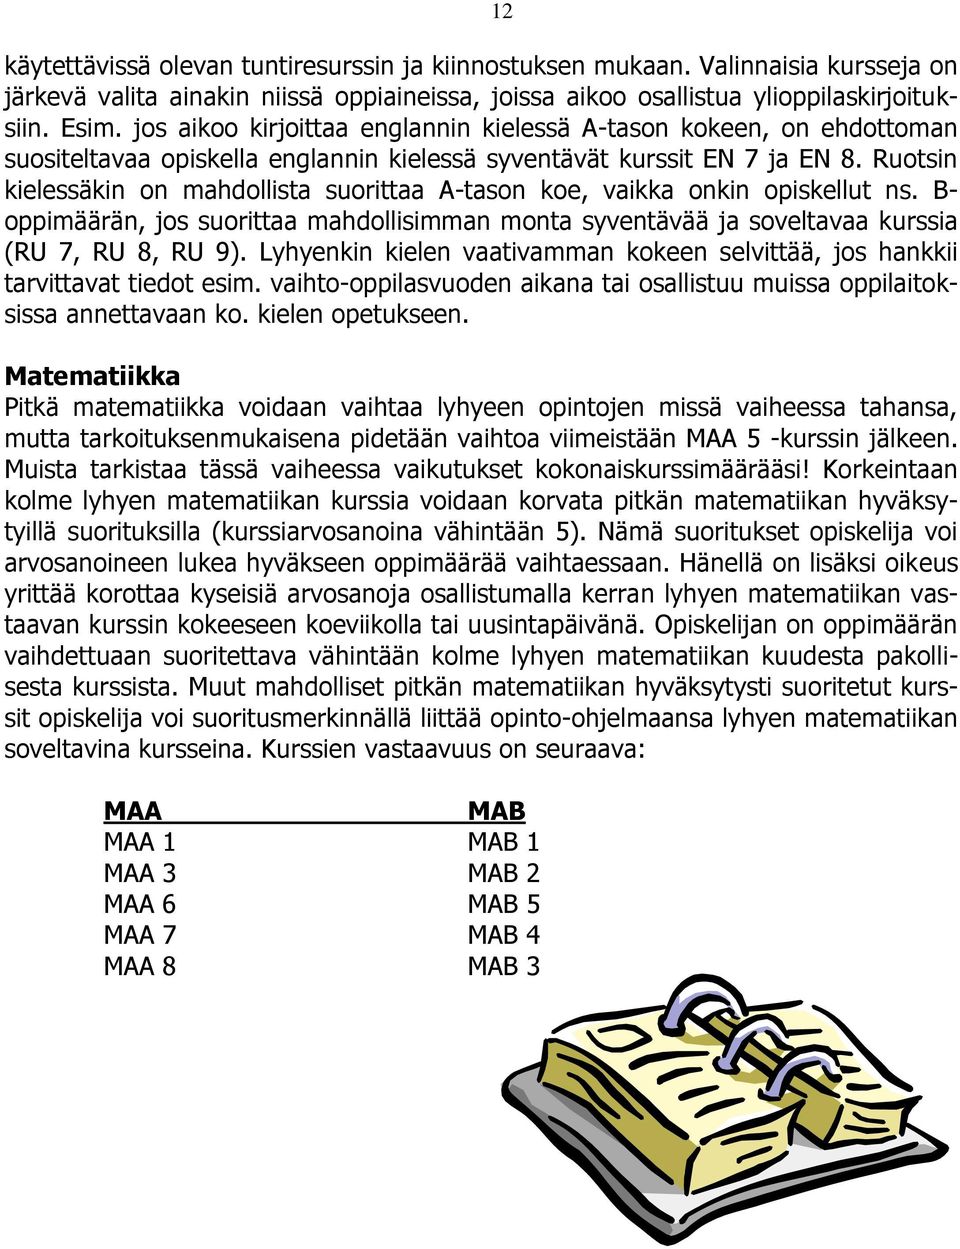 Ruotsin kielessäkin on mahdollista suorittaa A-tason koe, vaikka onkin opiskellut ns. B- oppimäärän, jos suorittaa mahdollisimman monta syventävää ja soveltavaa kurssia (RU 7, RU 8, RU 9).